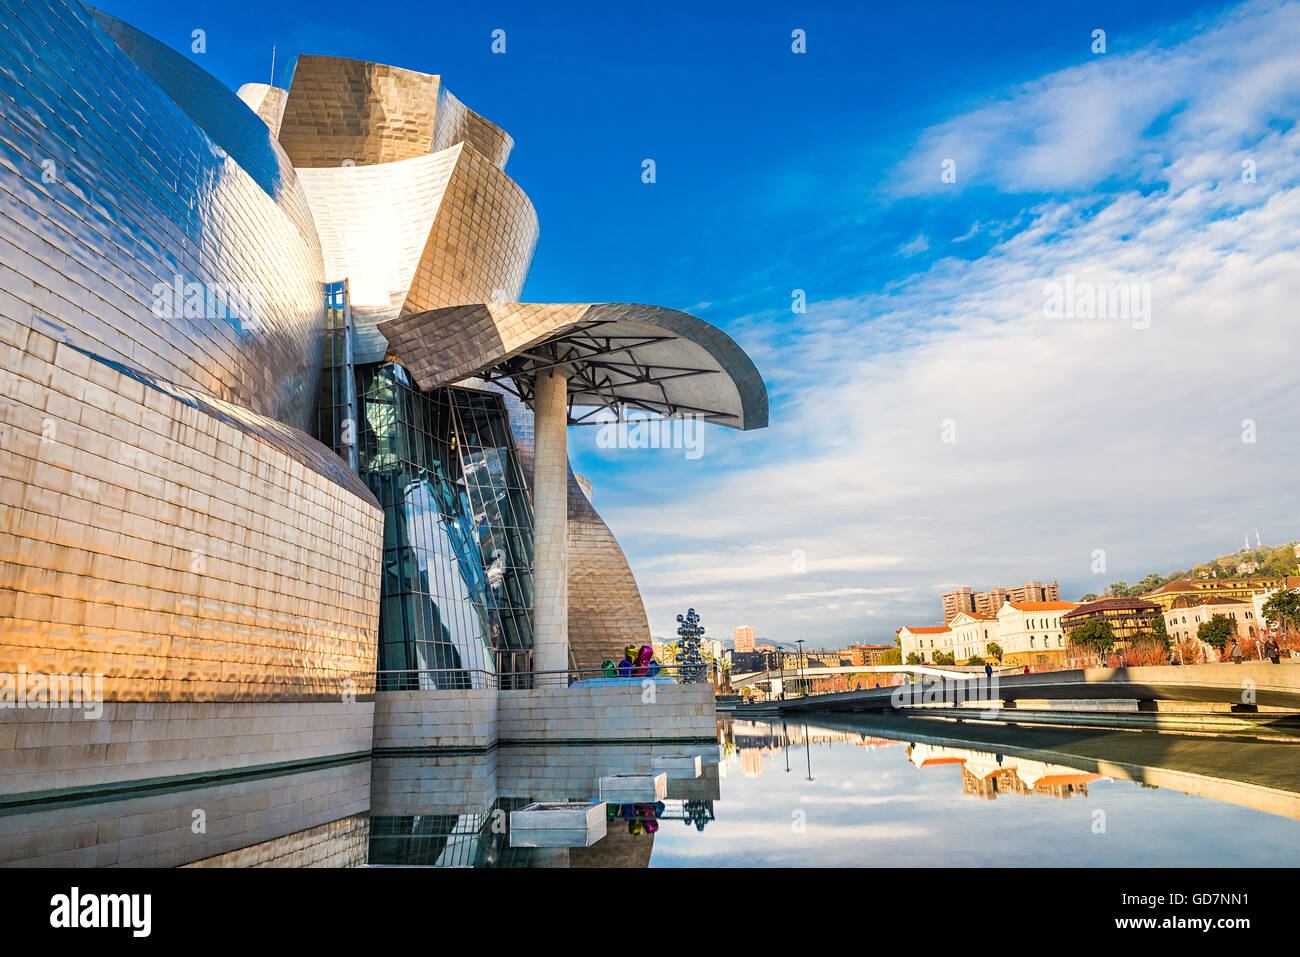 La ville de Bilbao en novembre - coups d'Espagne - Voyage d'Europe Banque D'Images